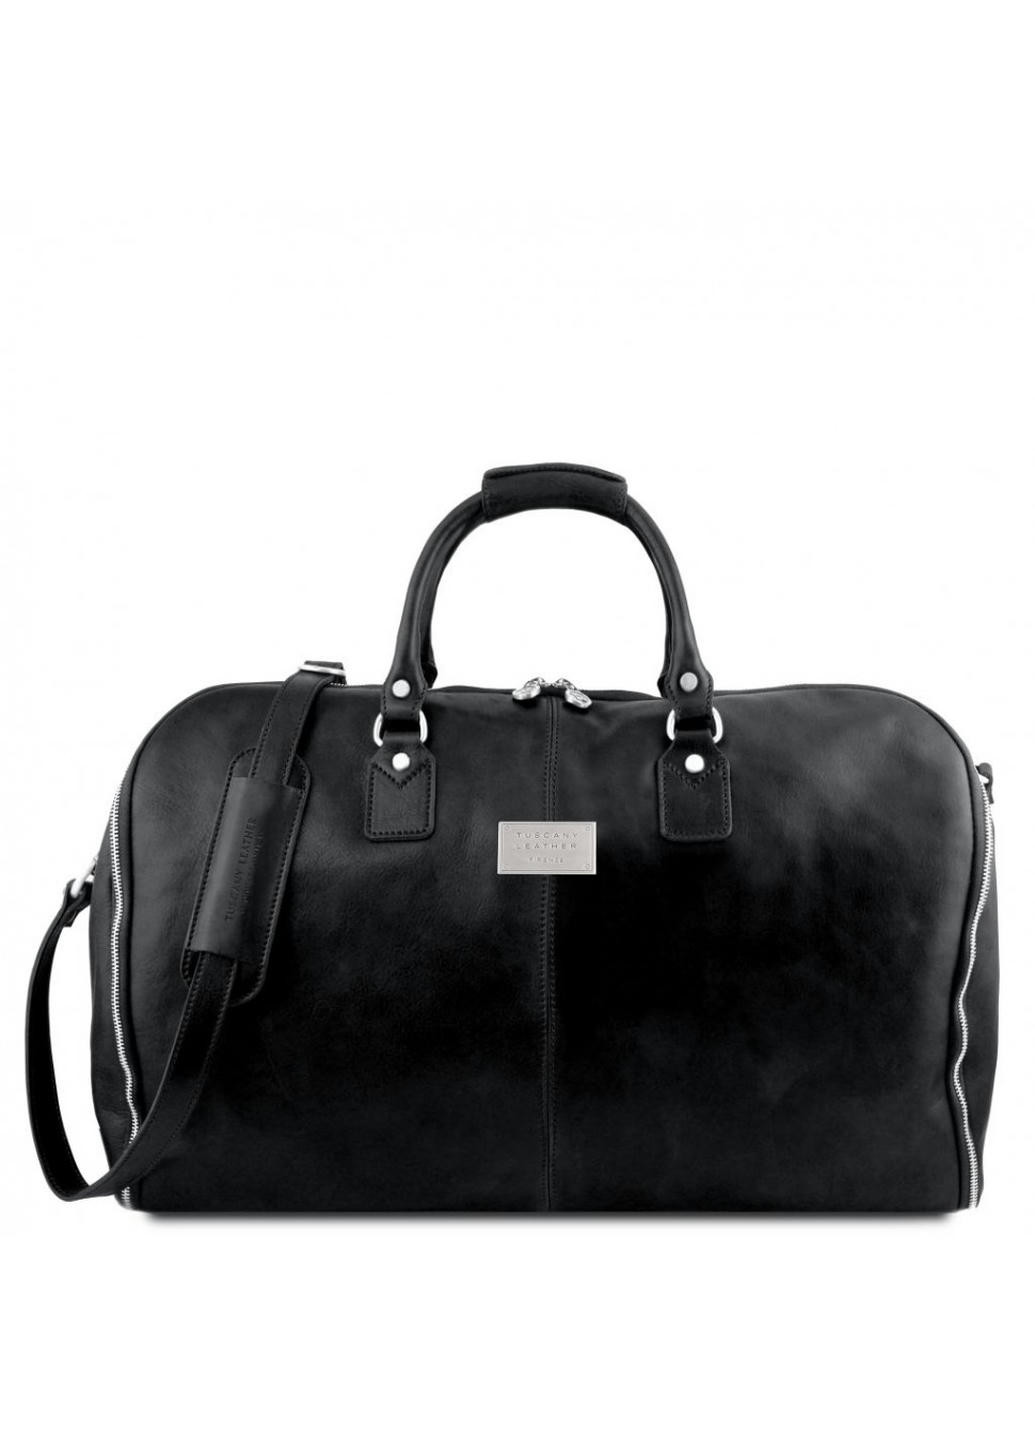 Кожаная сумка портплед, гармент Antigua TL141538 от Tuscany (Черный) Tuscany Leather (257657079)